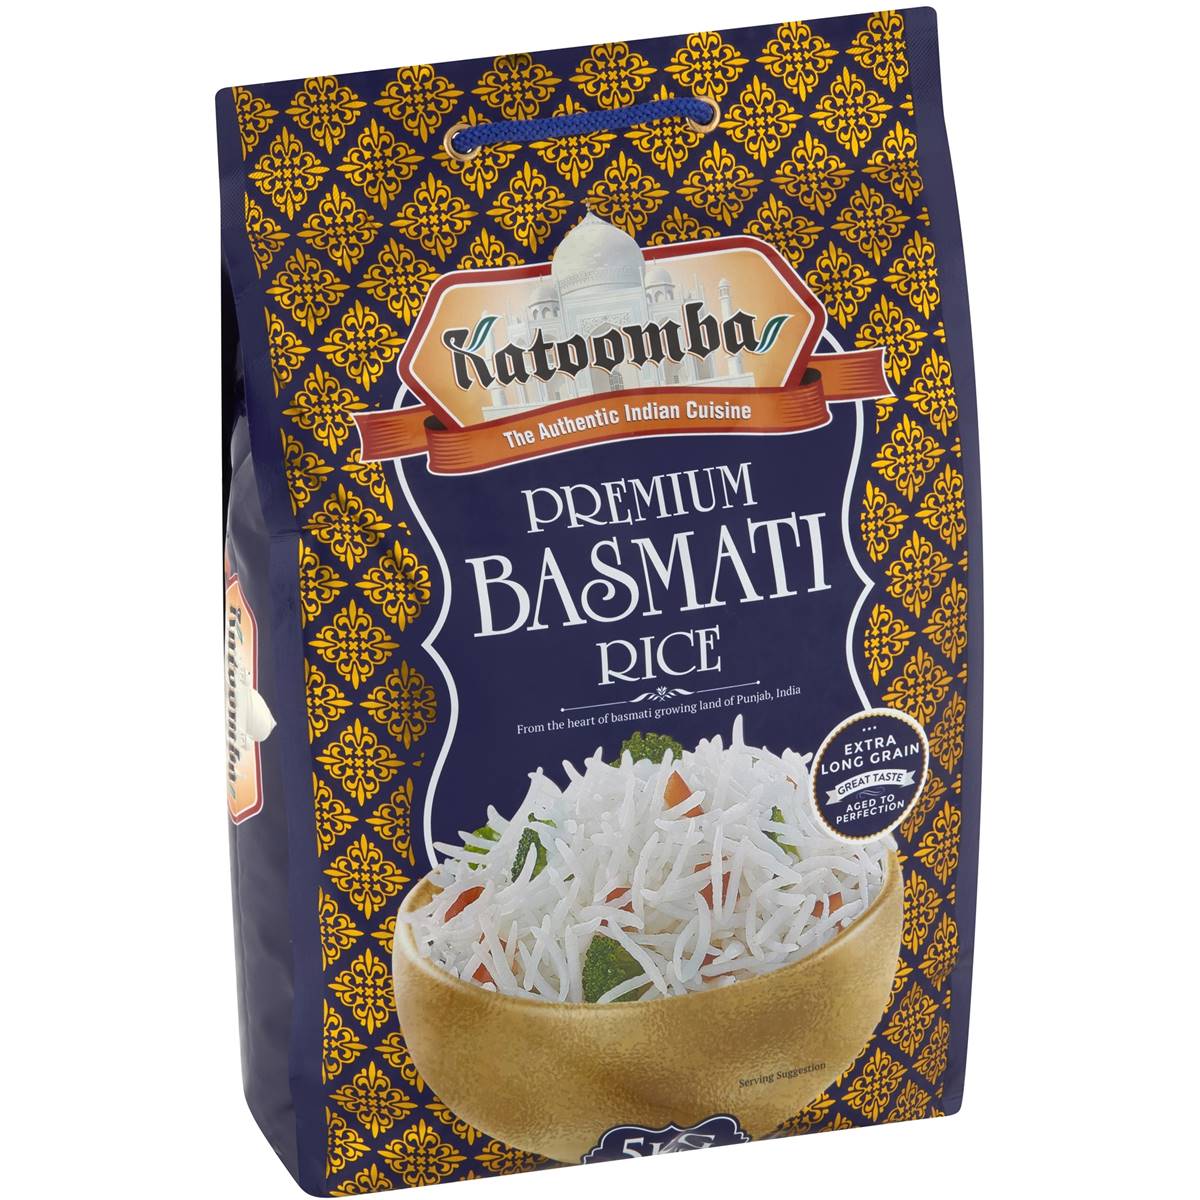 Calories in Katoomba Premium Basmati Rice